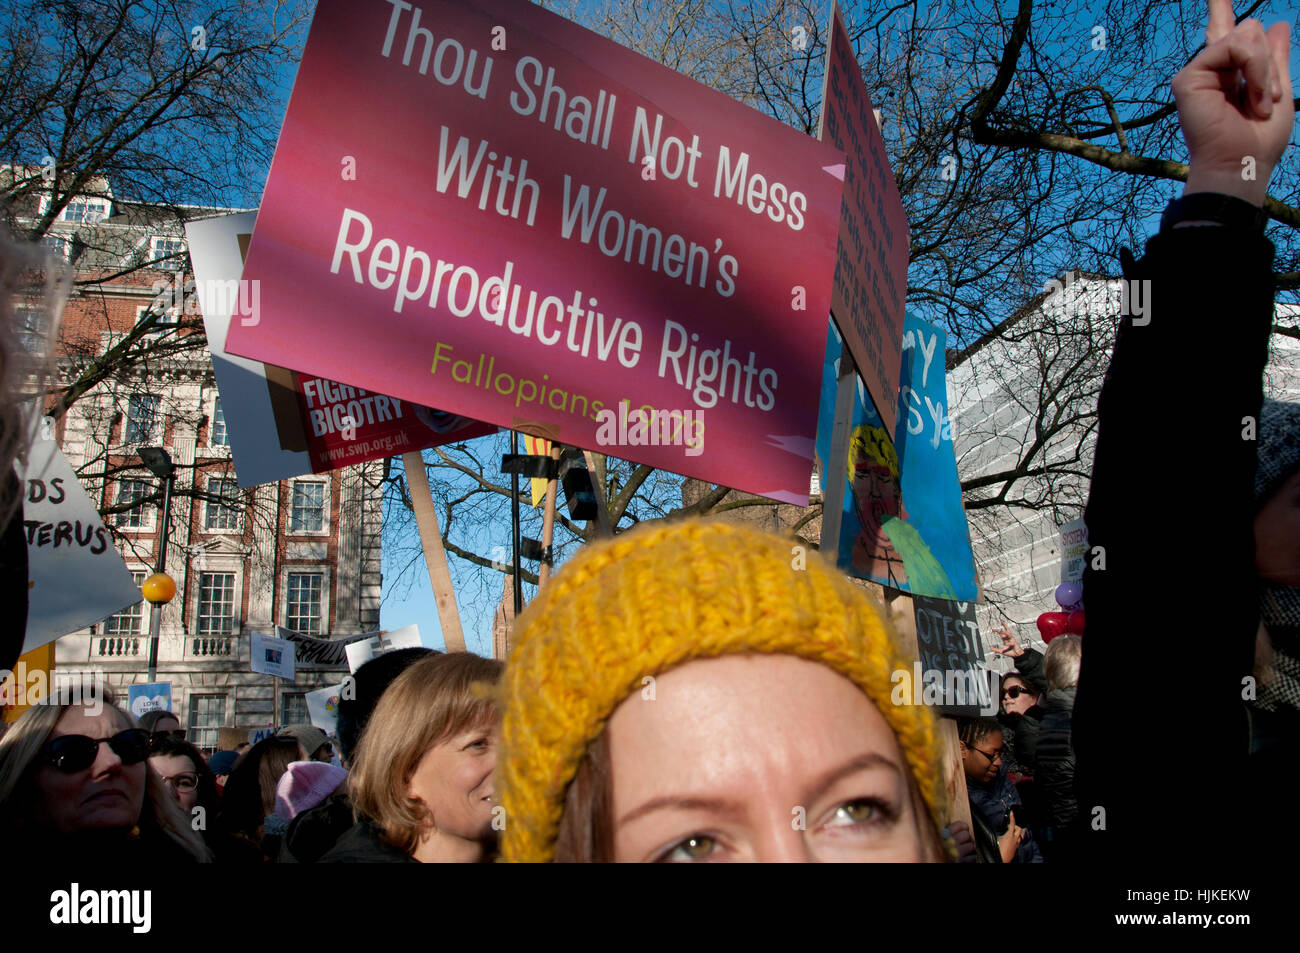 Anti-femmes, Londres. mars Trump Placard en disant 'Tu ne dois pas jouer avec les droits des femmes en la matière". Banque D'Images